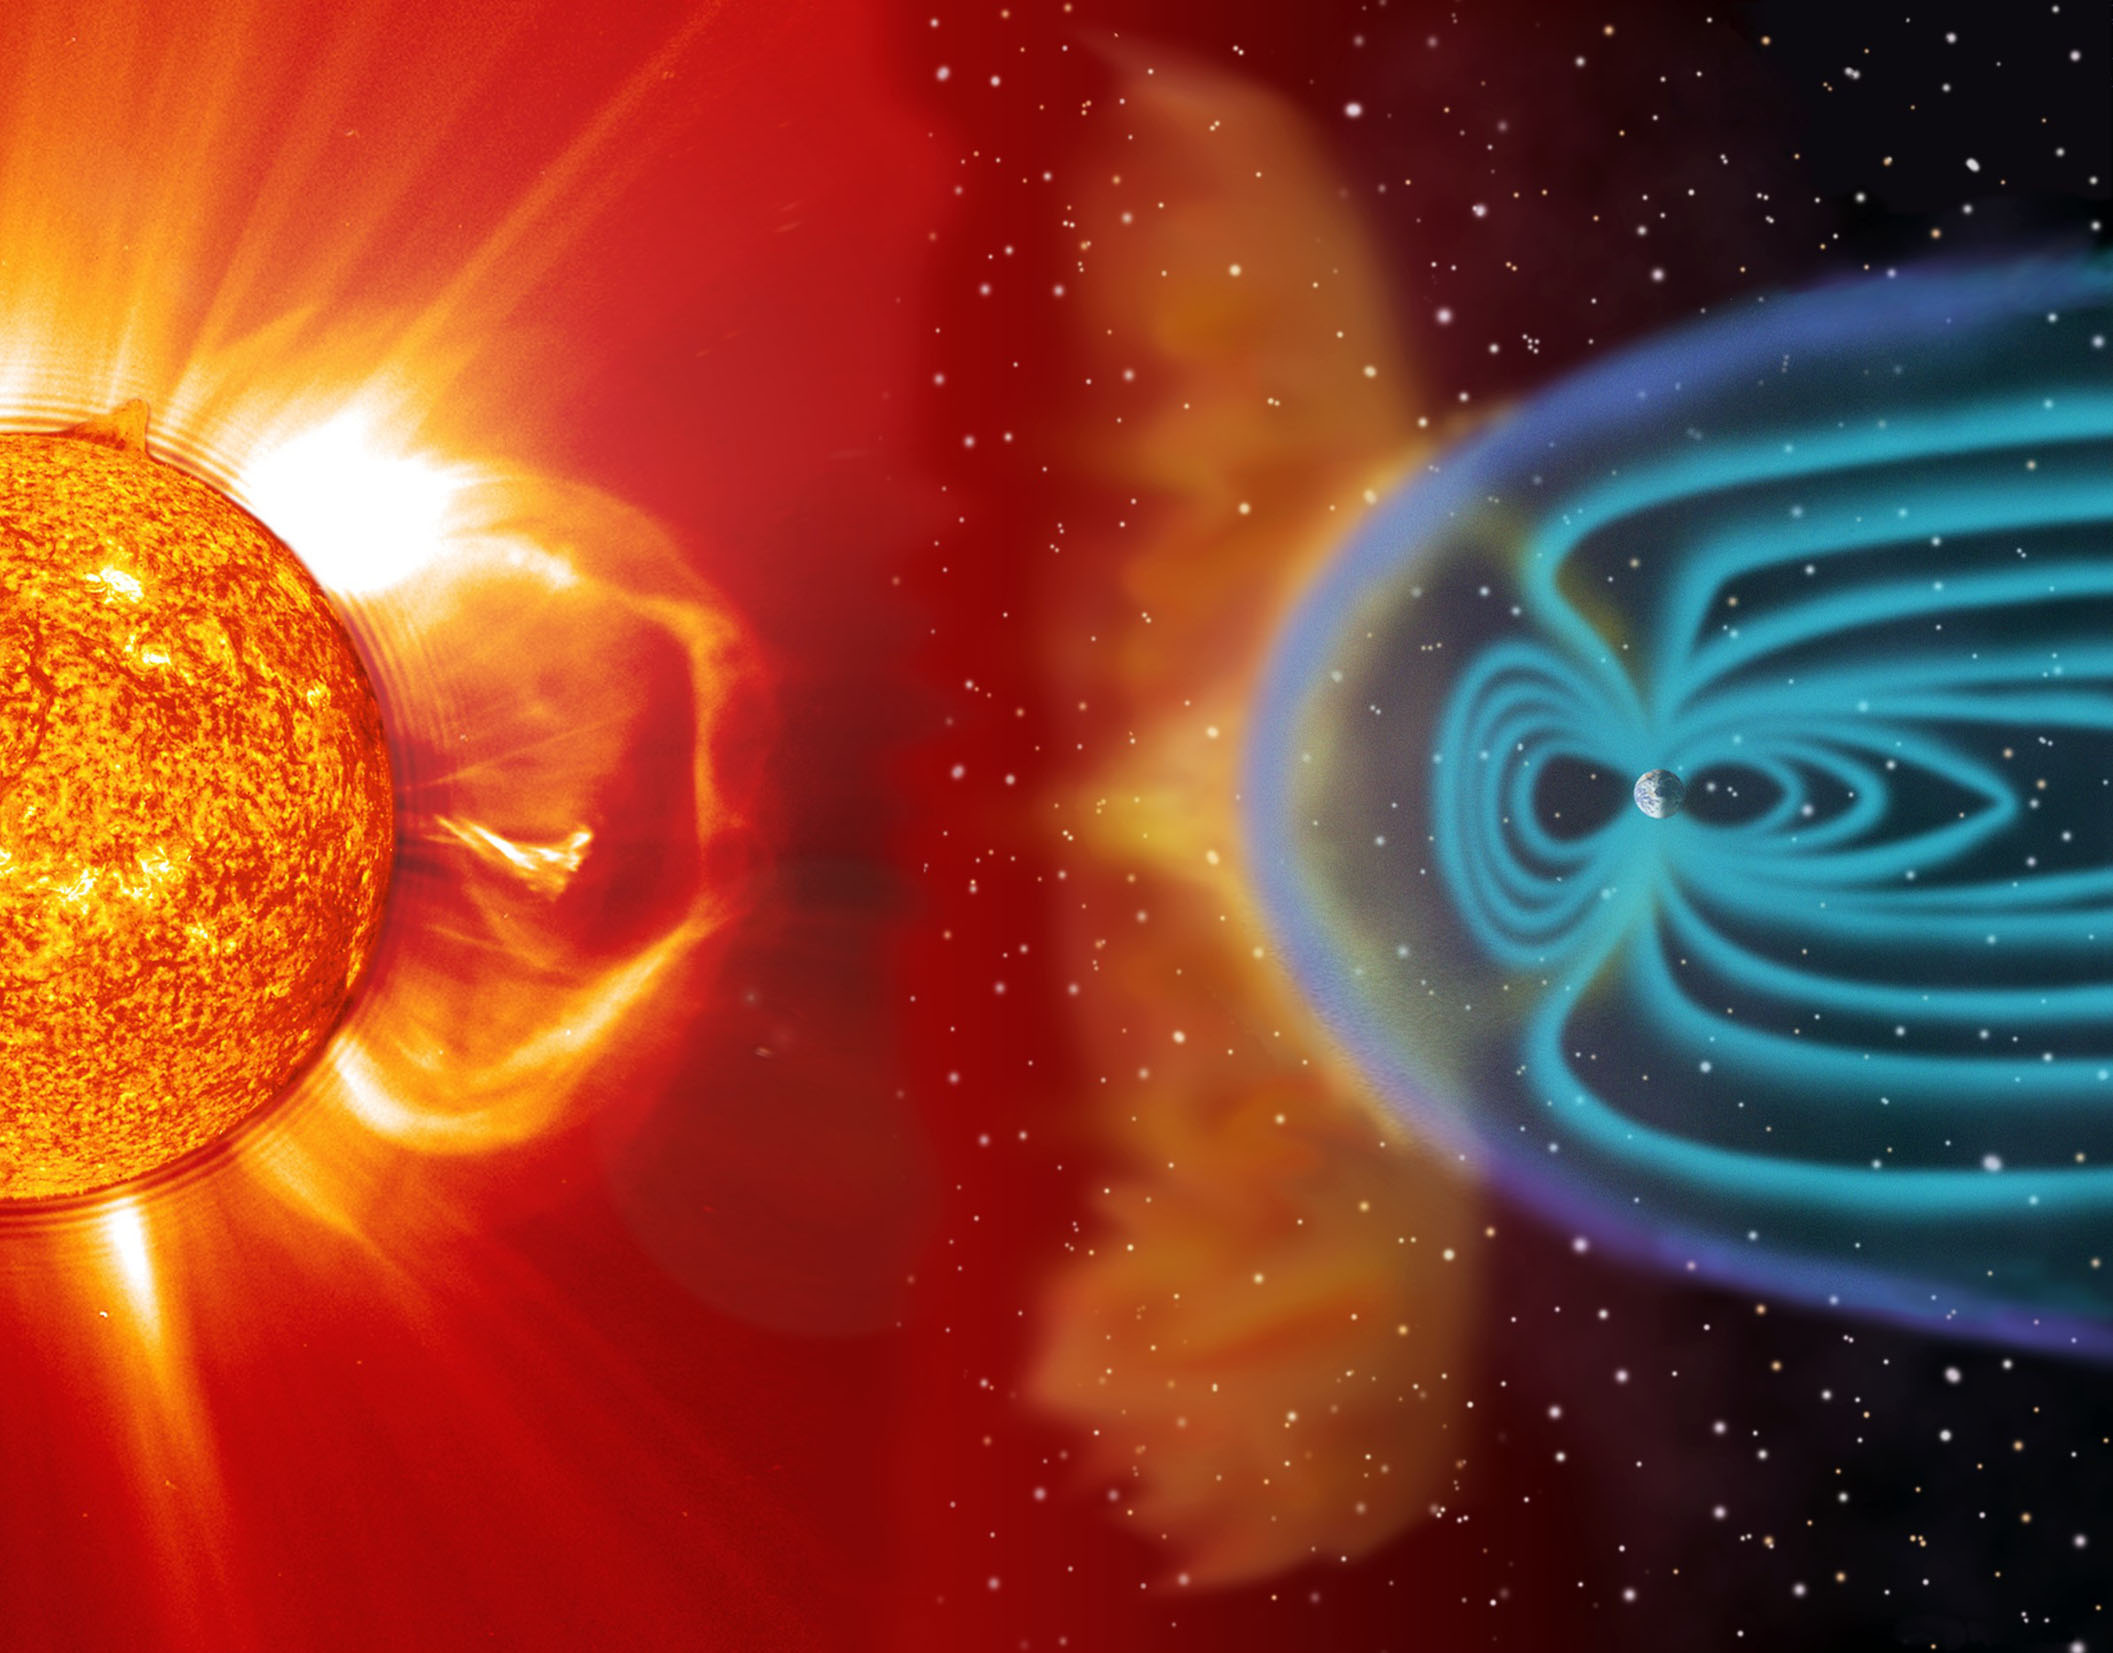 科学家称破坏性太阳风暴通常每25年左右袭击地球一次